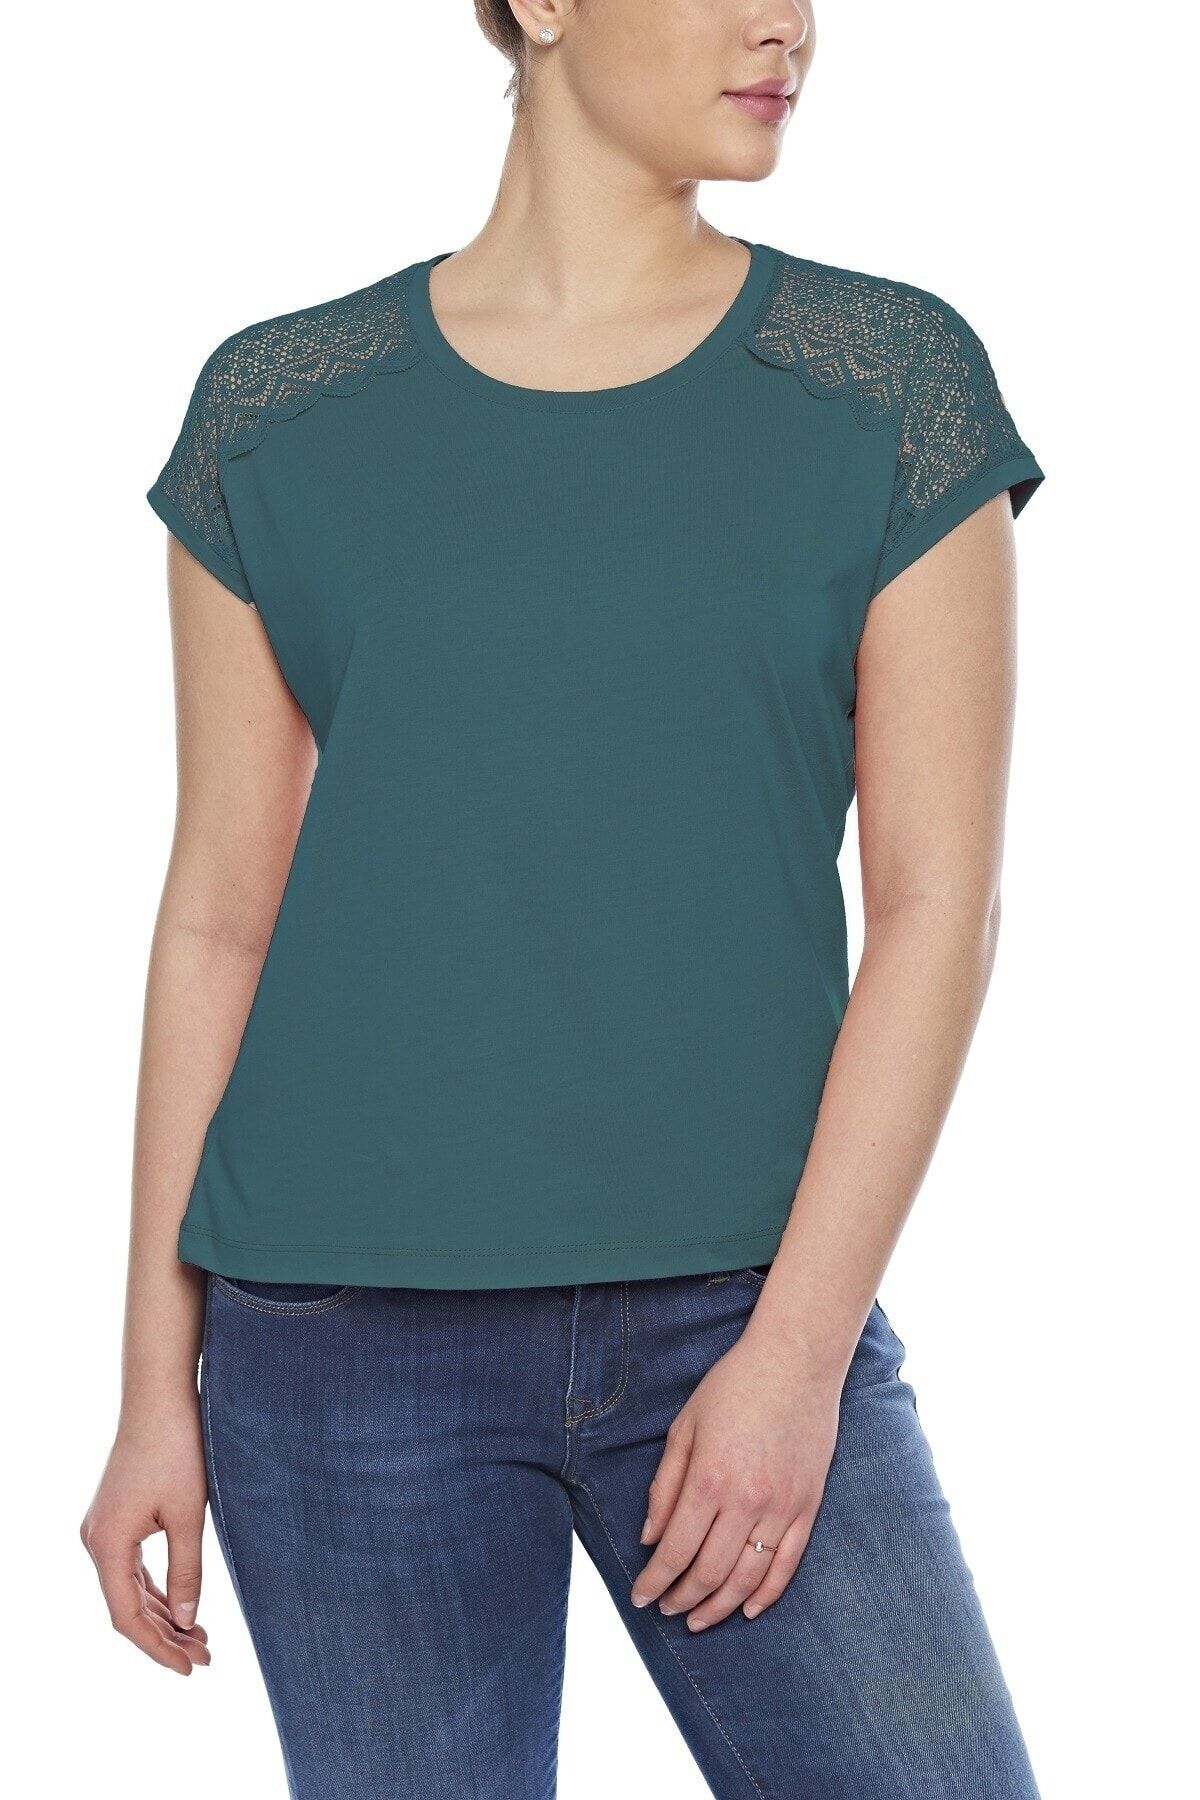 fsm1453 Kadın Pamuklu Modal Kolsuz Comfort Fit Yuvarlak Yaka Dantelli T-shirt -2408